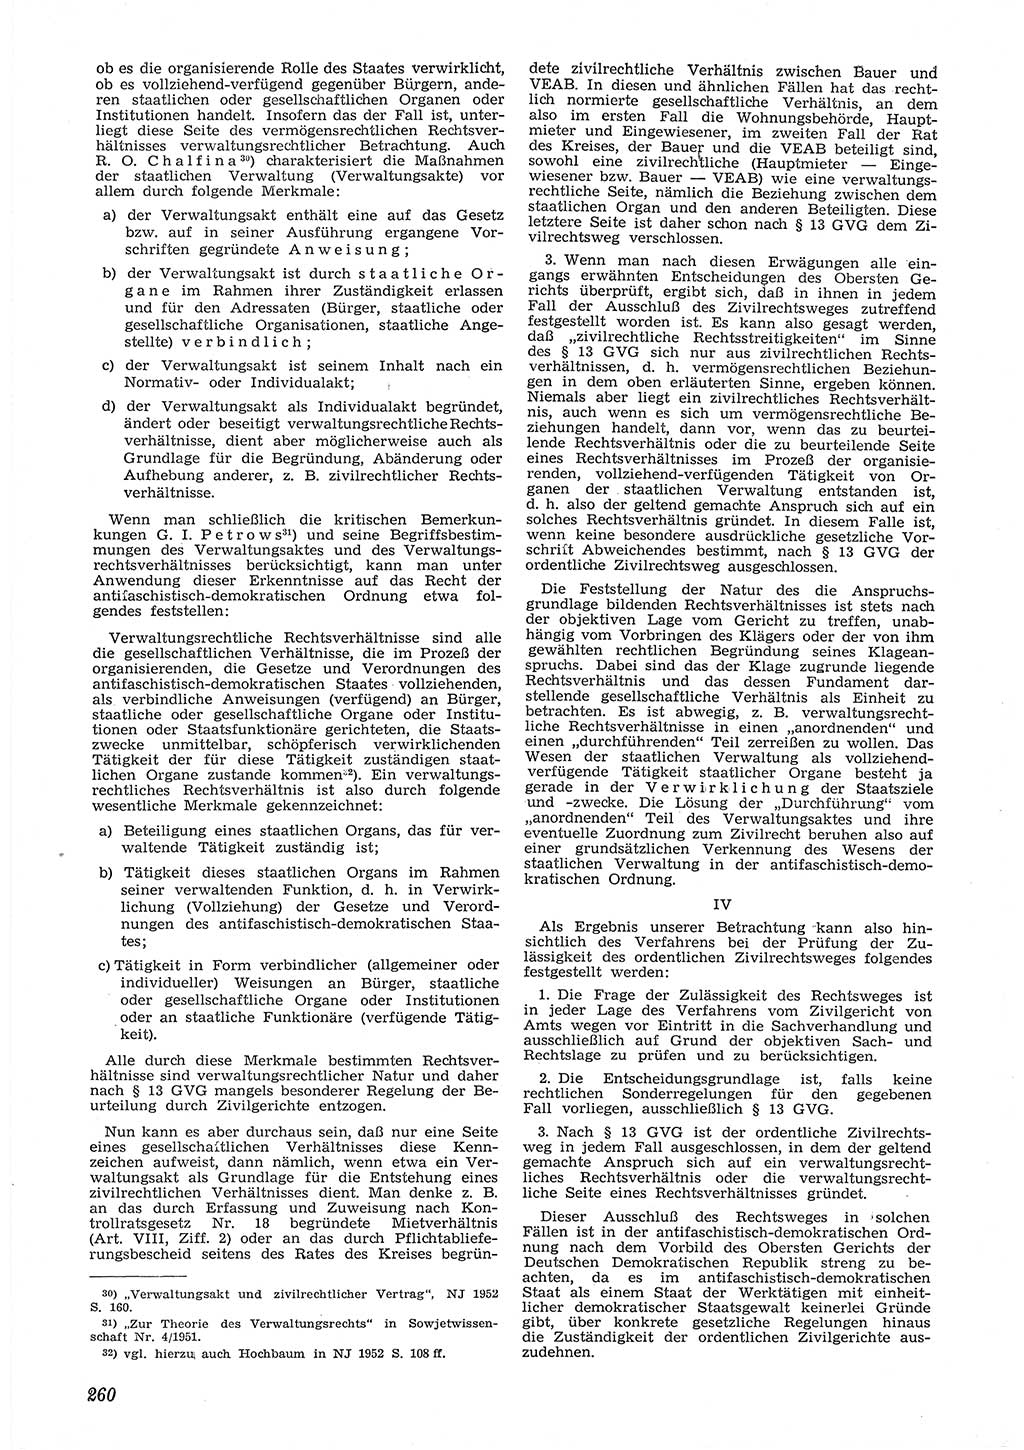 Neue Justiz (NJ), Zeitschrift für Recht und Rechtswissenschaft [Deutsche Demokratische Republik (DDR)], 6. Jahrgang 1952, Seite 260 (NJ DDR 1952, S. 260)